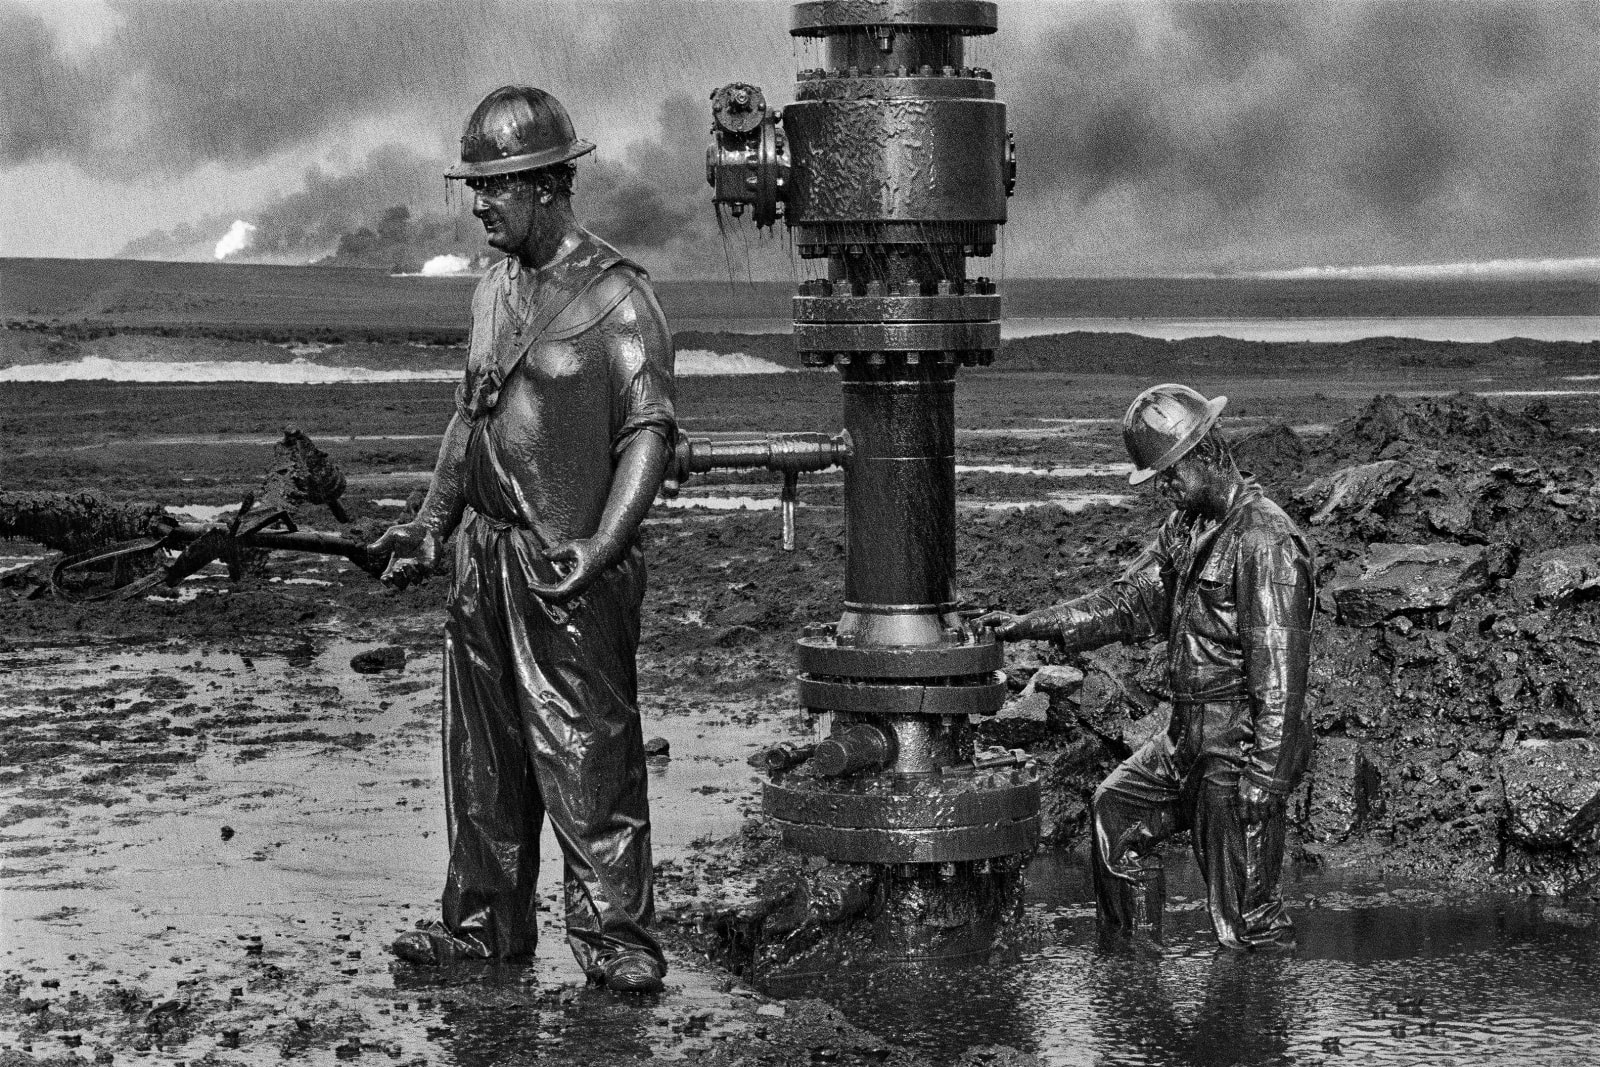 Sebastião Salgado, Greater Burhan Oil Field, Kuwait, 1991